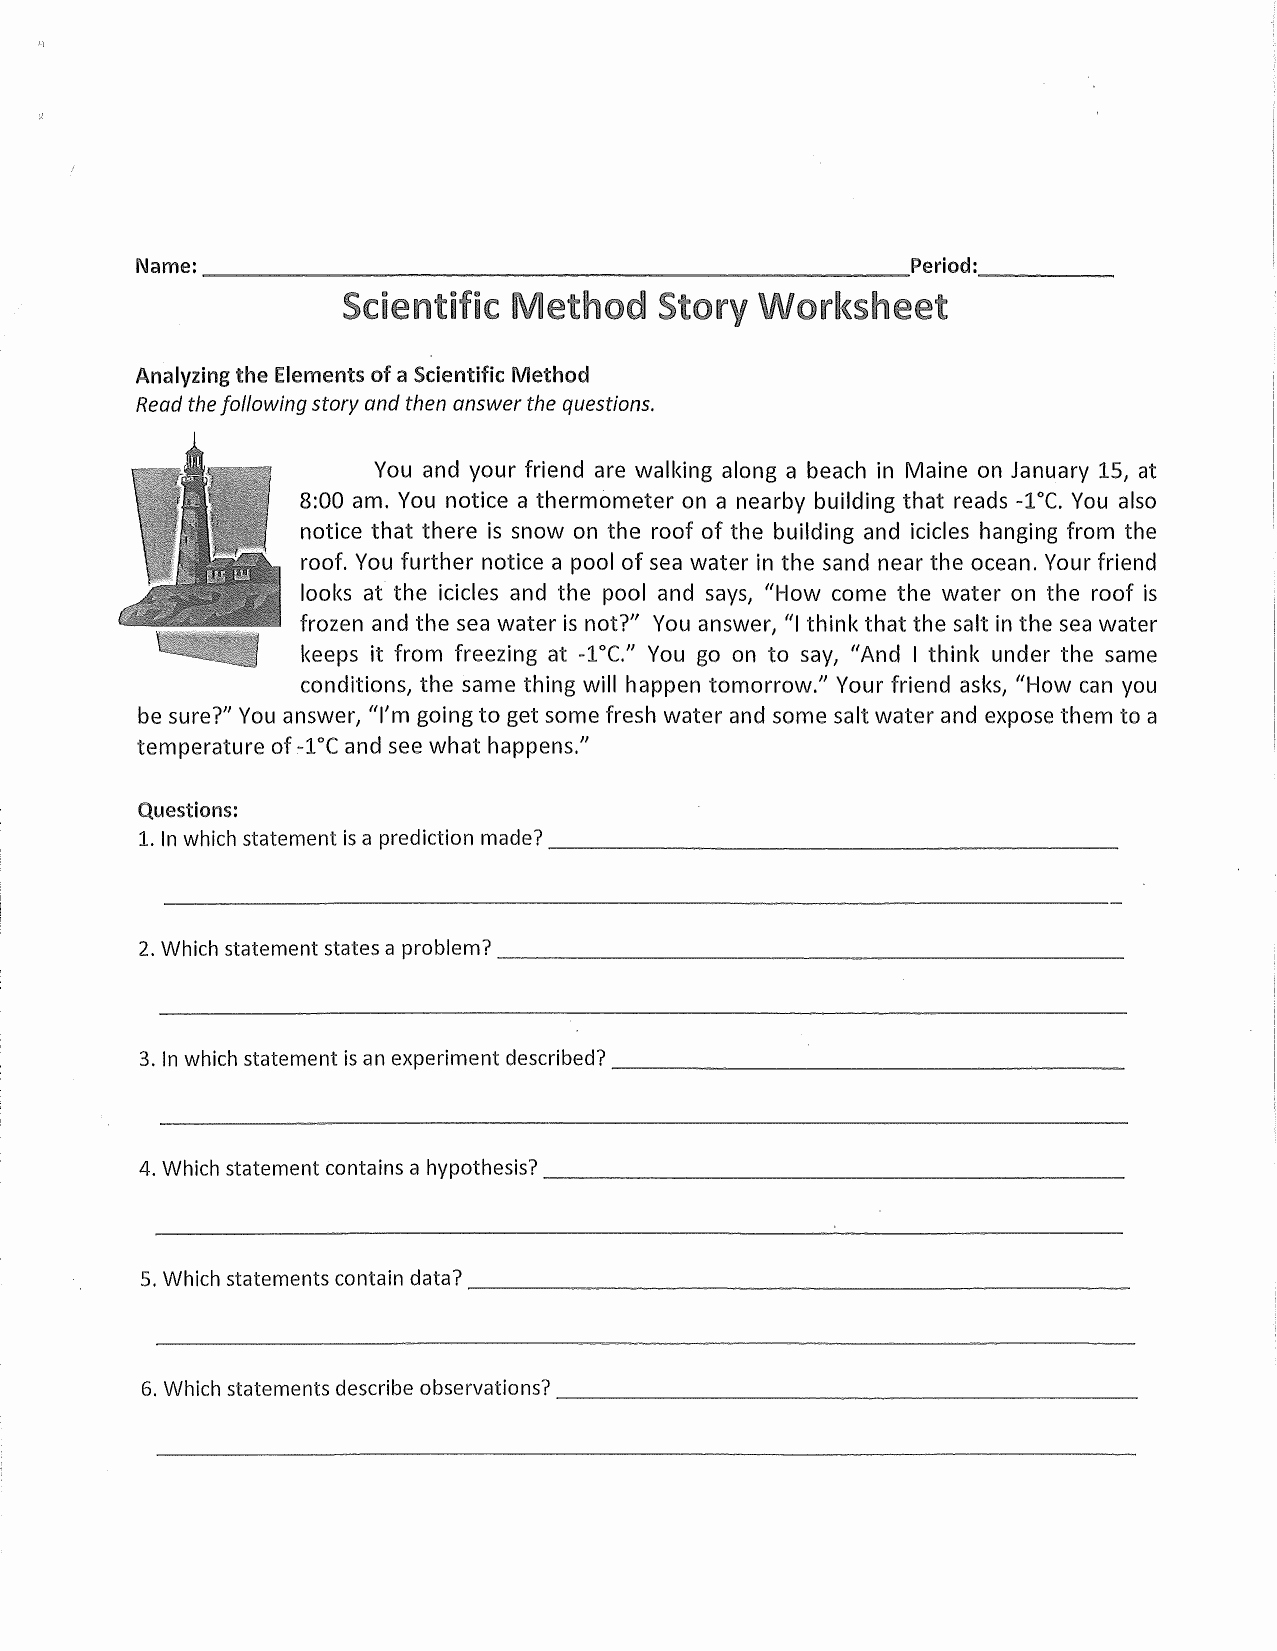 scientific method story worksheet